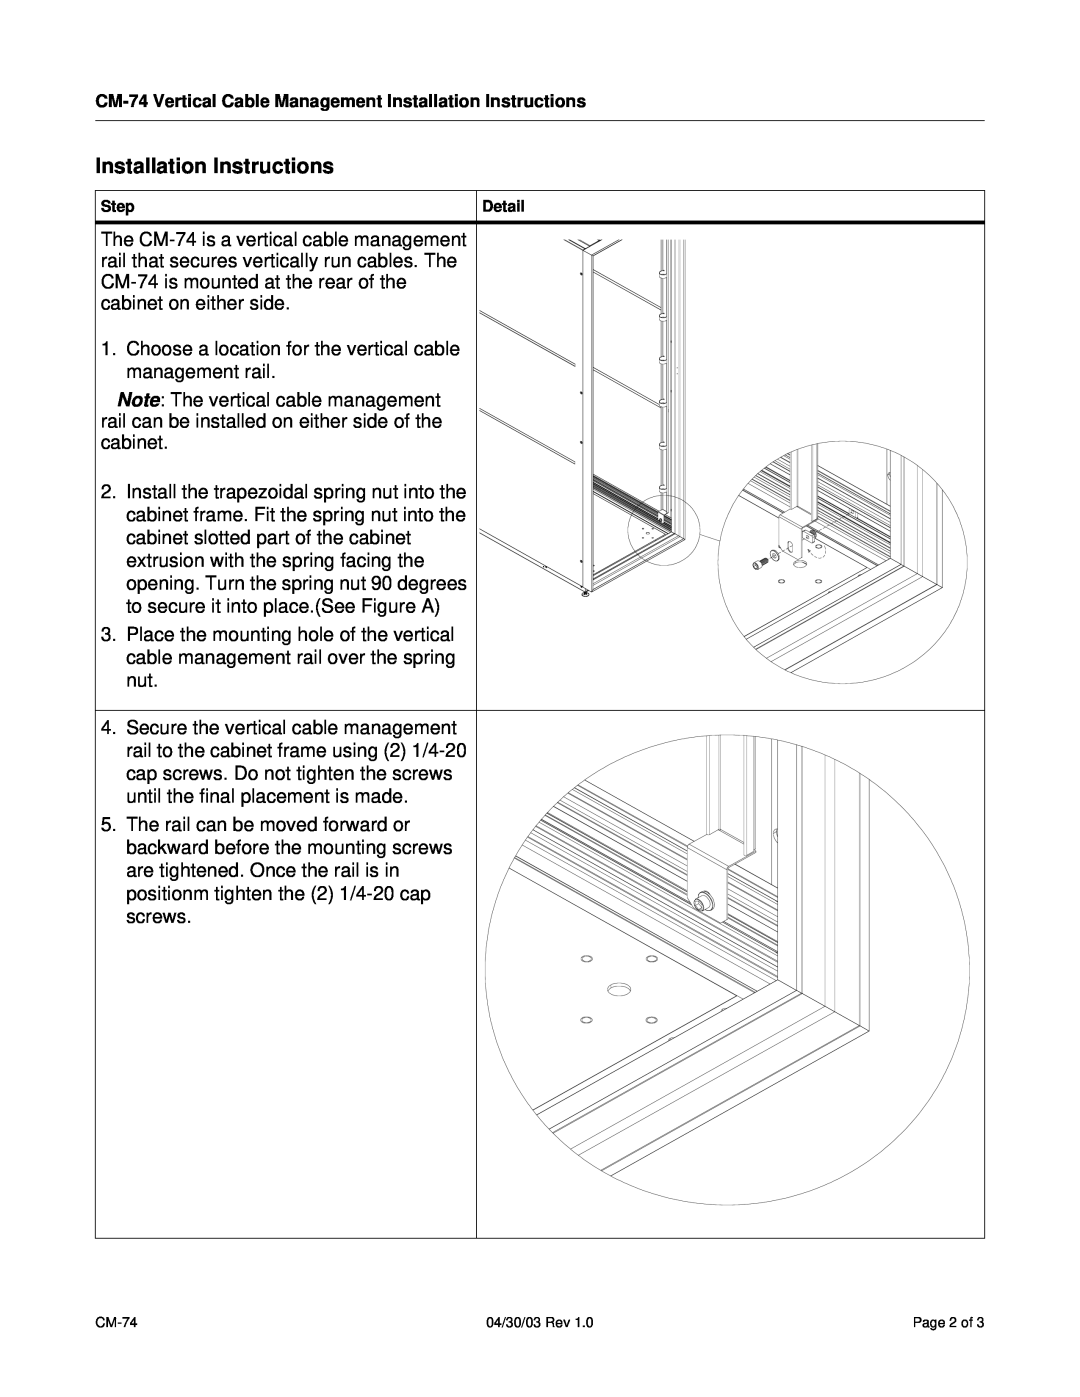 SharkRack CM-74 installation instructions Installation Instructions, Step, Detail 